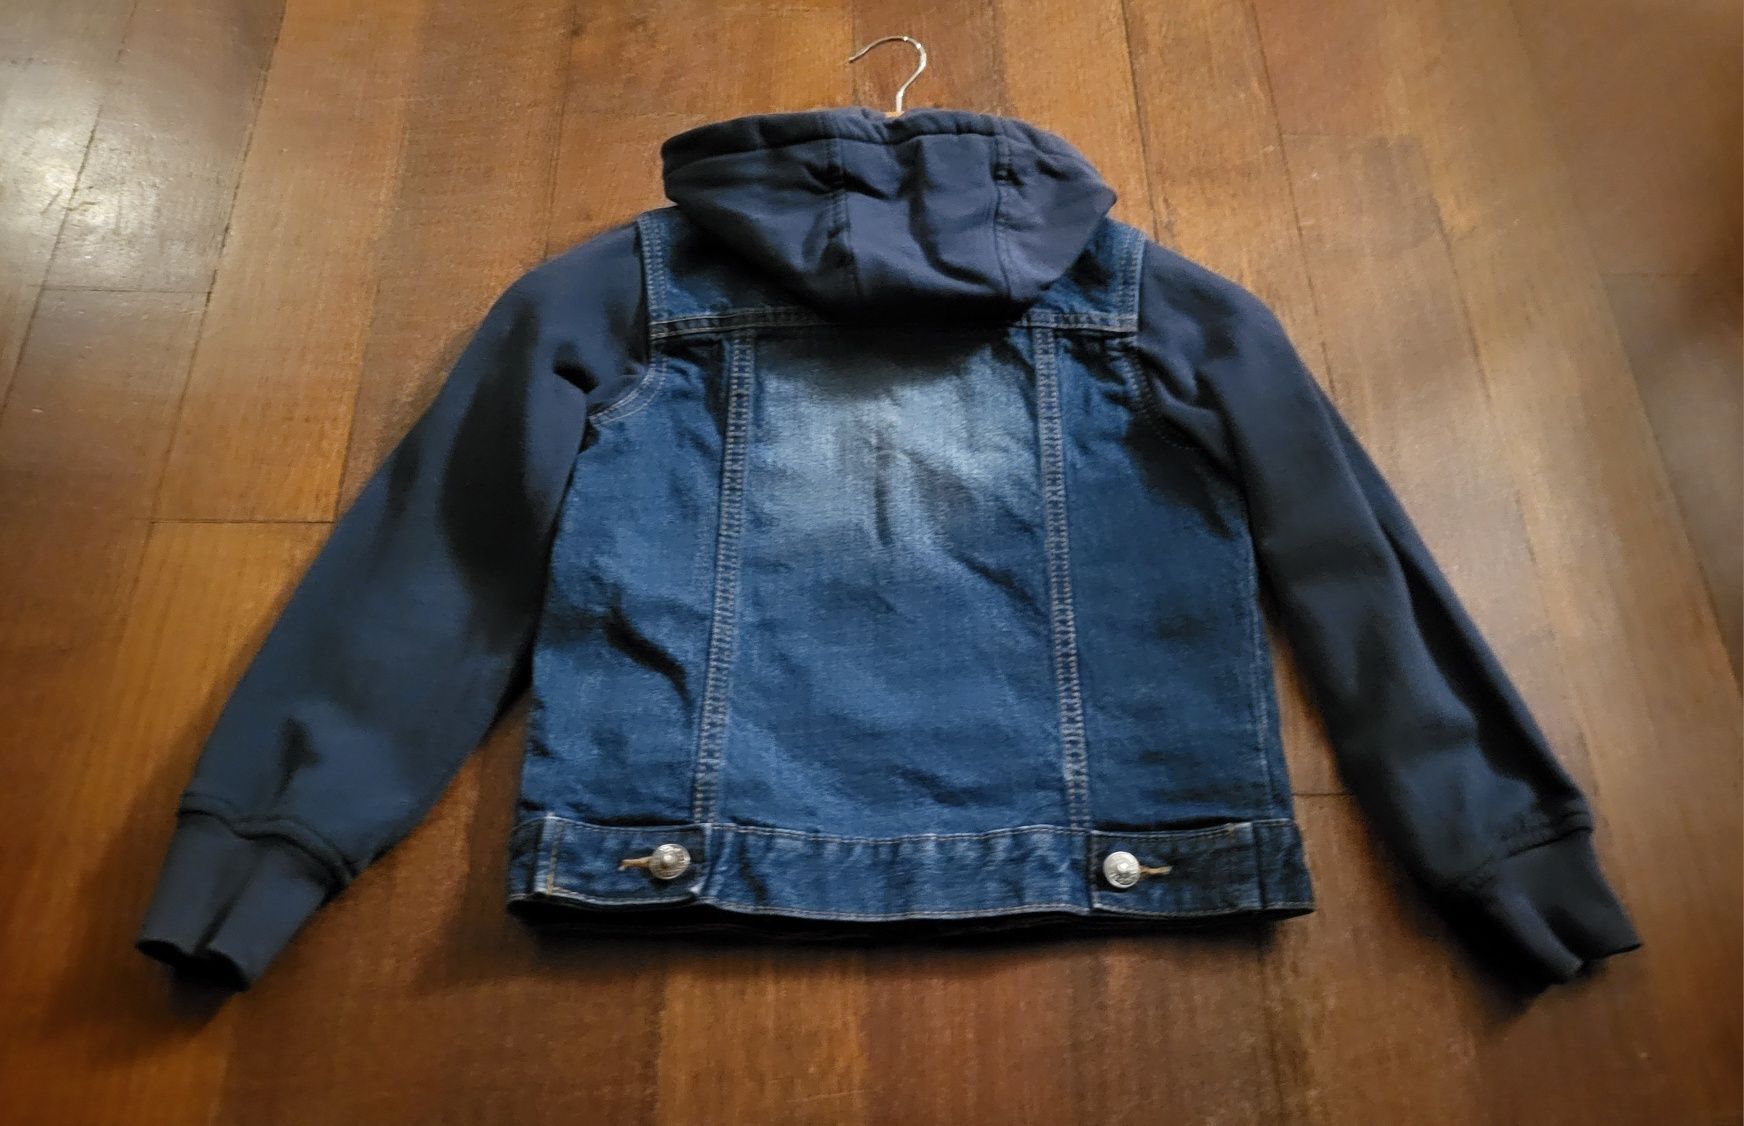 Katana/kurtka jeansowa, rozmiar 128